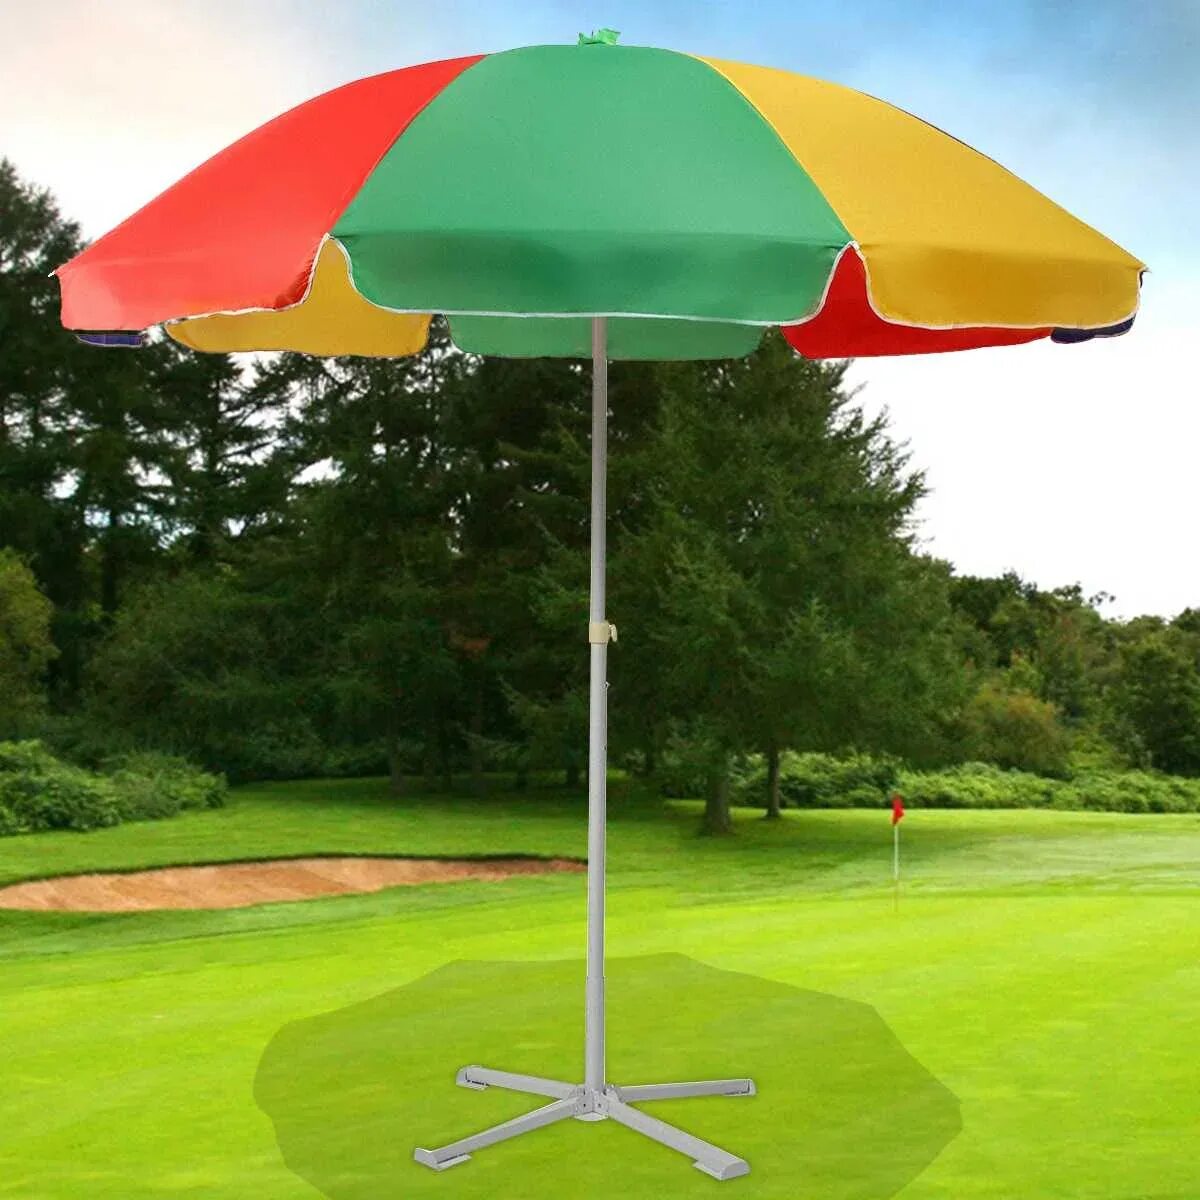 Купить пляжный зонт от солнца. Зонт садовый Green Glade 6002. Парасоль зонт от солнца. Зонт пляжный (длина 200-210 см диаметр 180см). А002 3030 зонт.